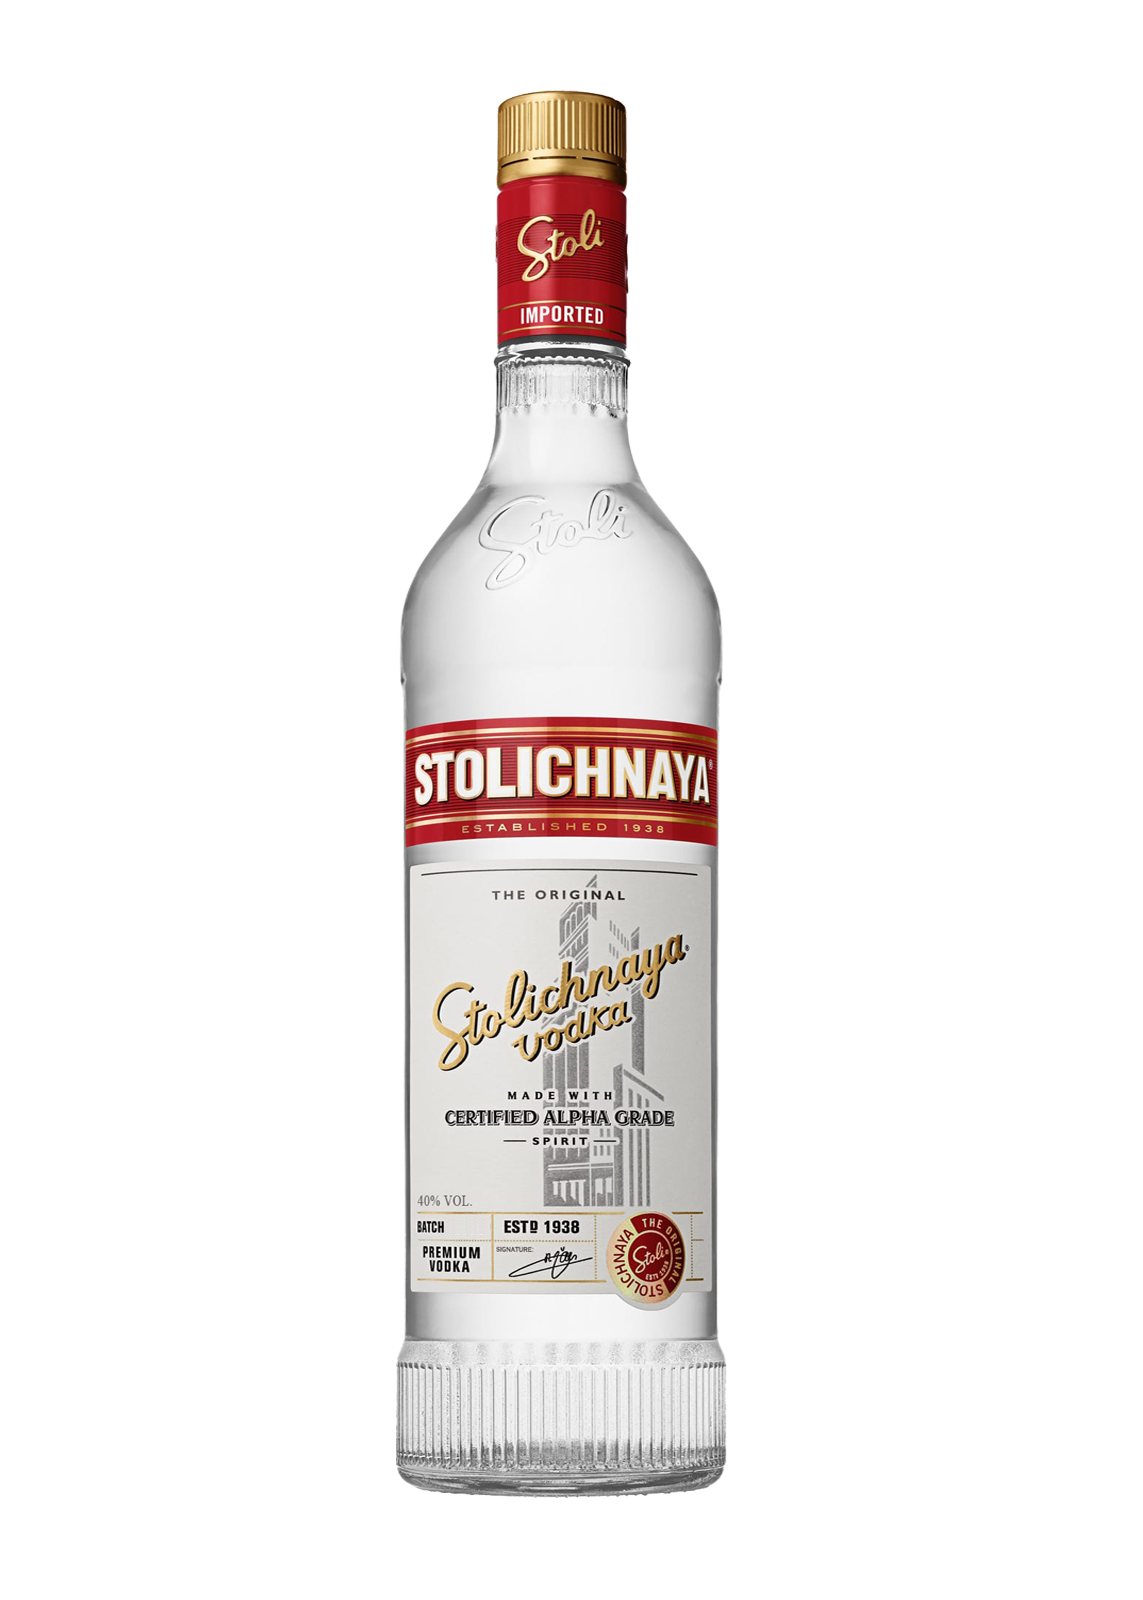 Stolichnaya Vodka Background PNG Image